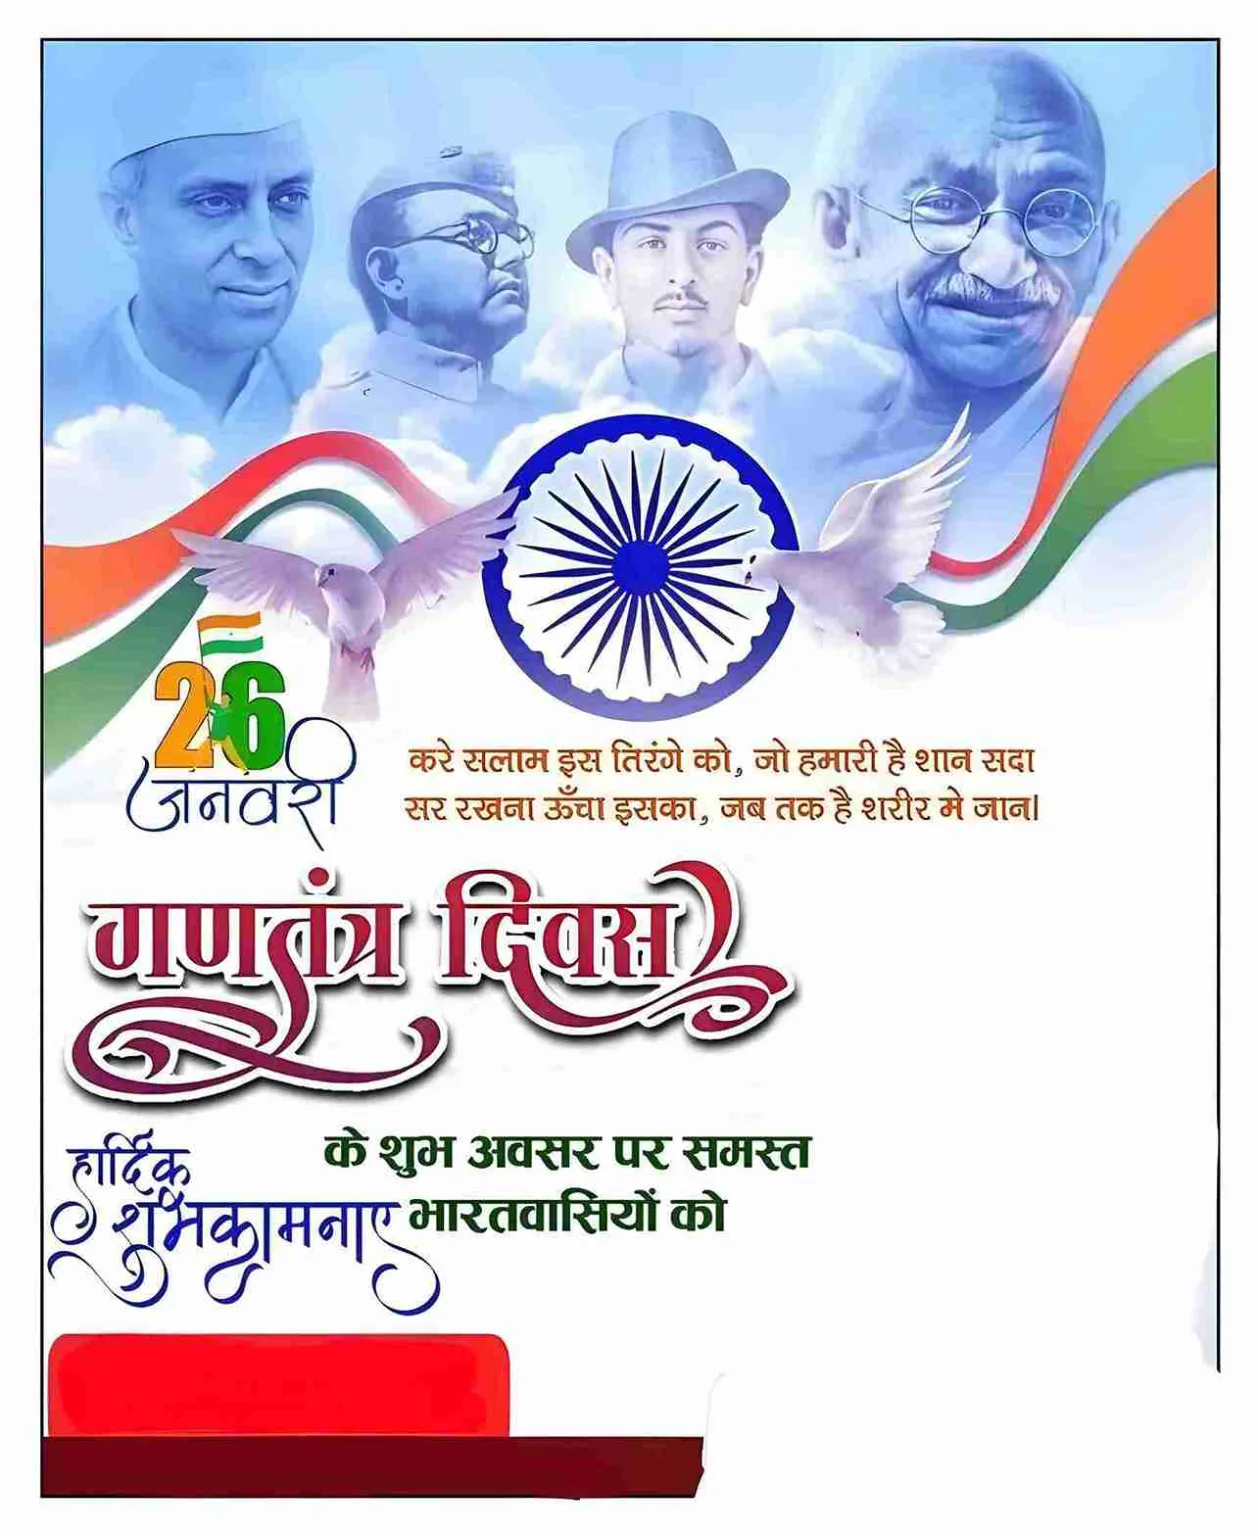 गणतंत्र दिवस की शुभकामनाए बैनर (26 January Poster)